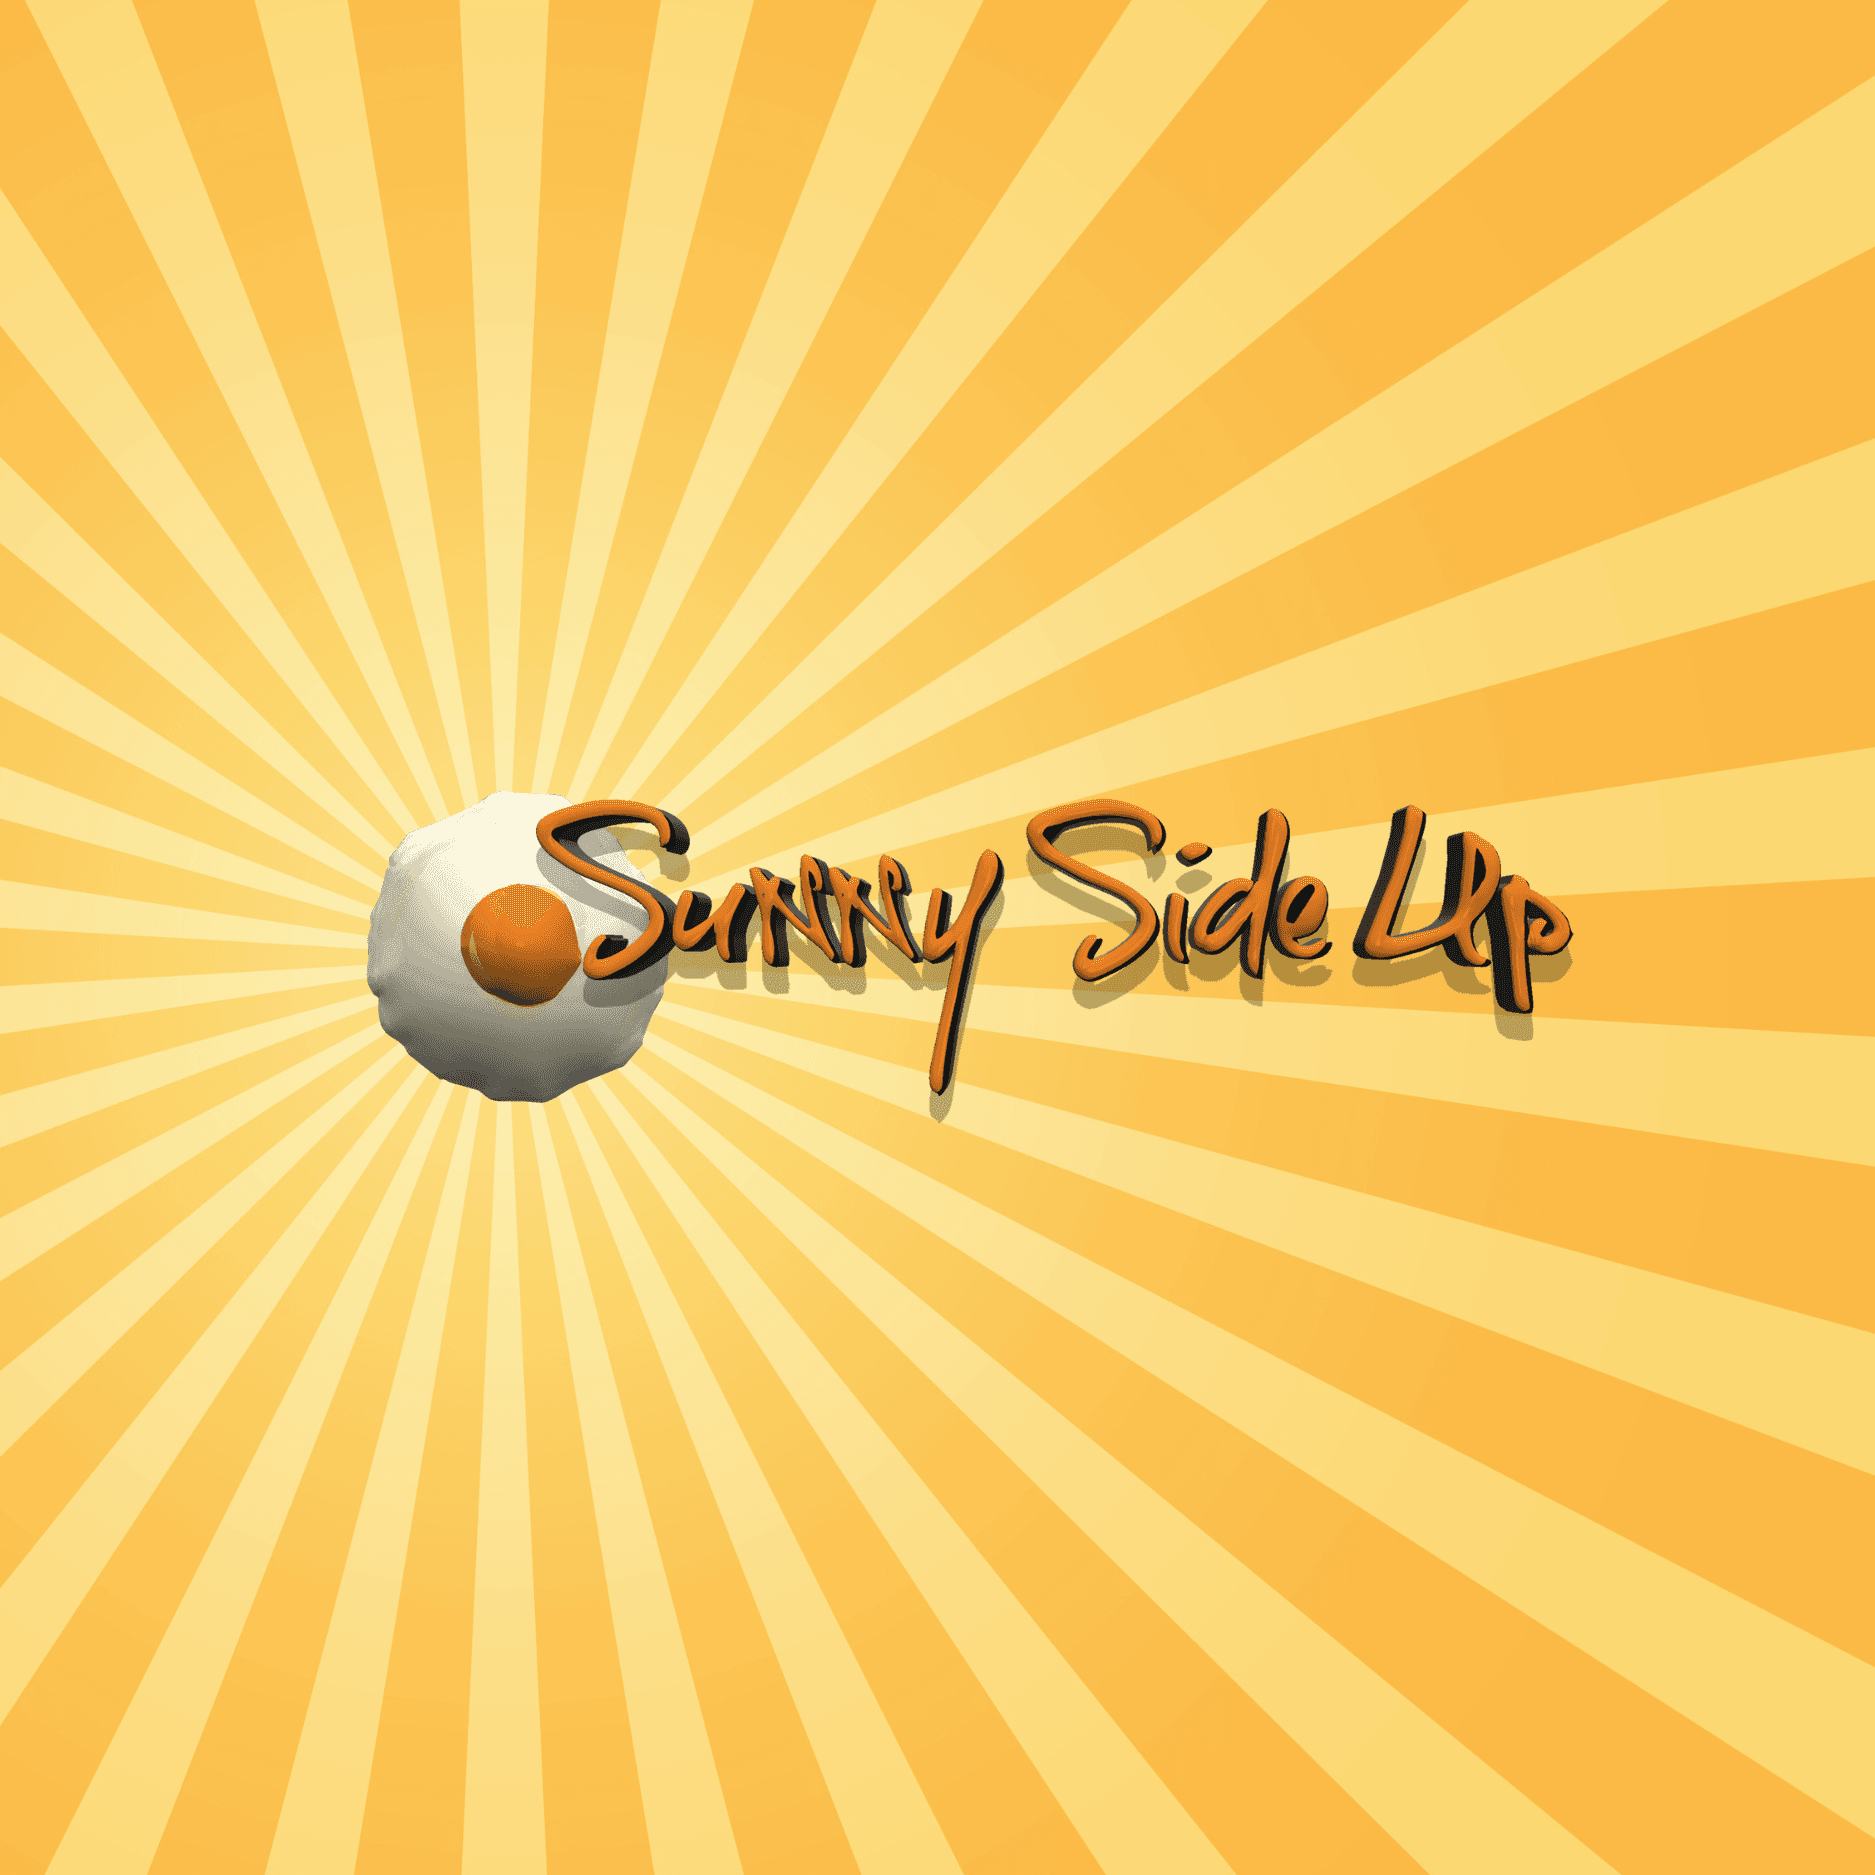 Sunny Side Up Logo